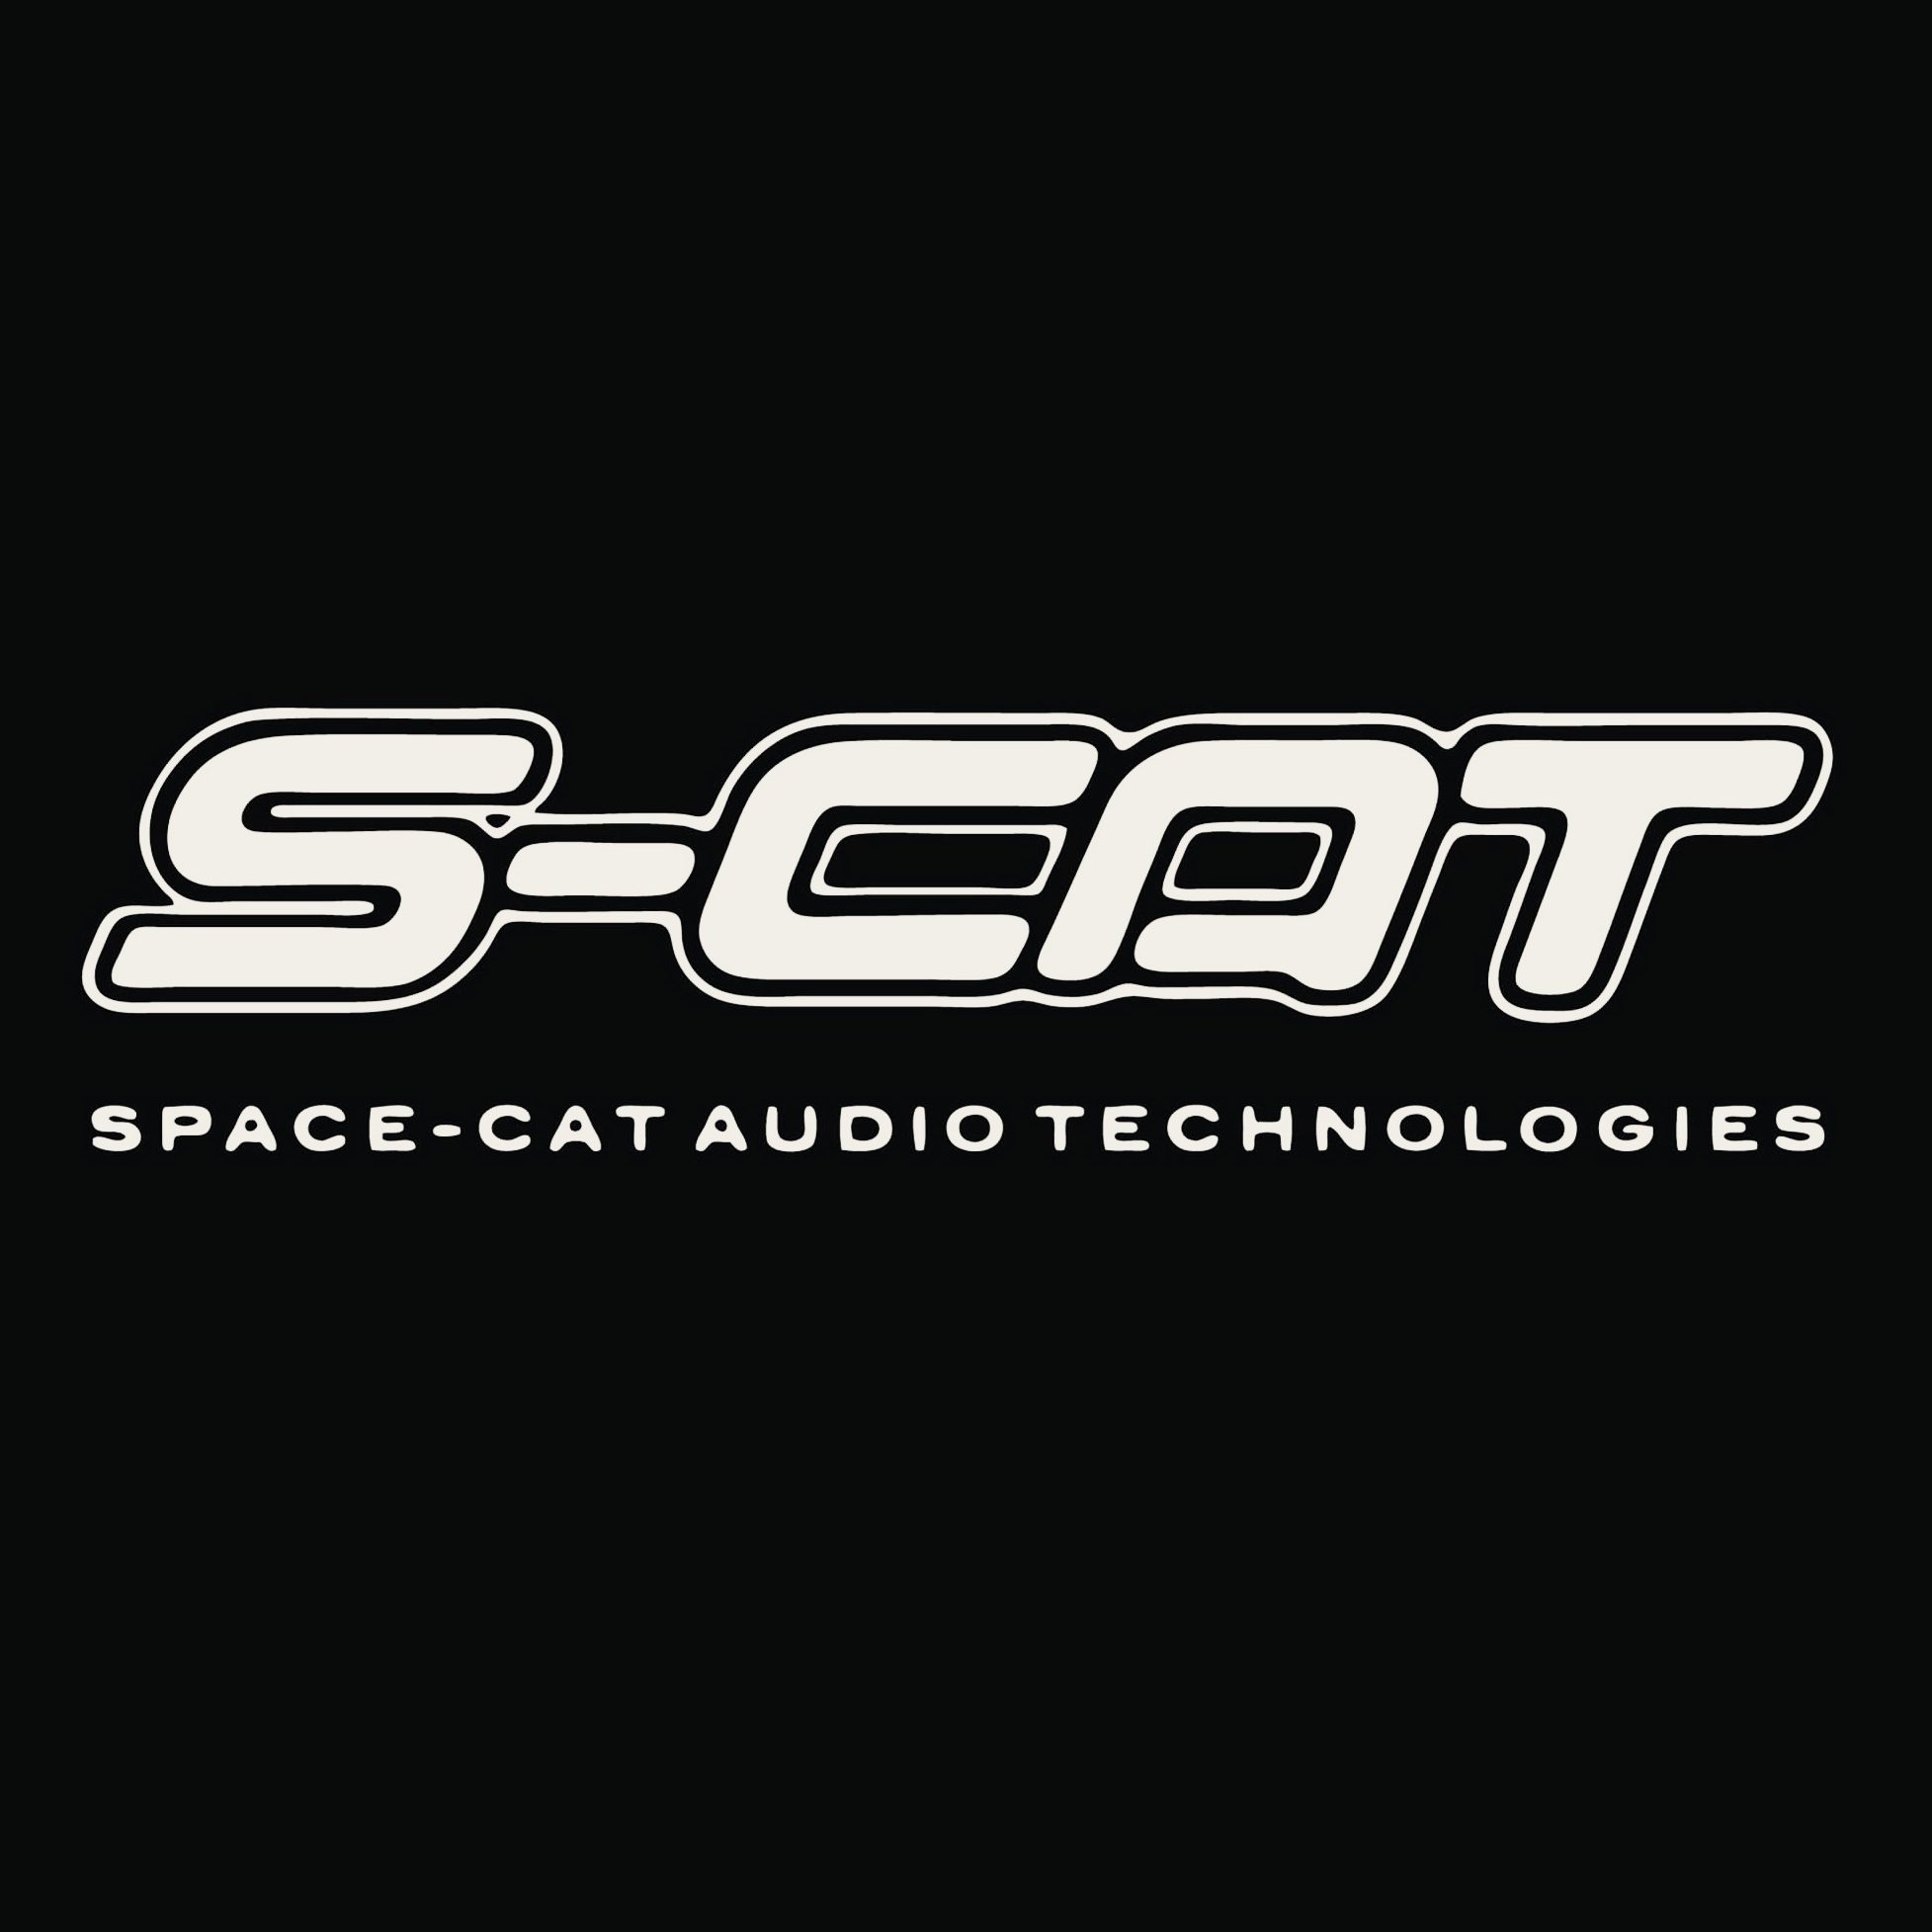 www.spacecataudiotechnologies.com